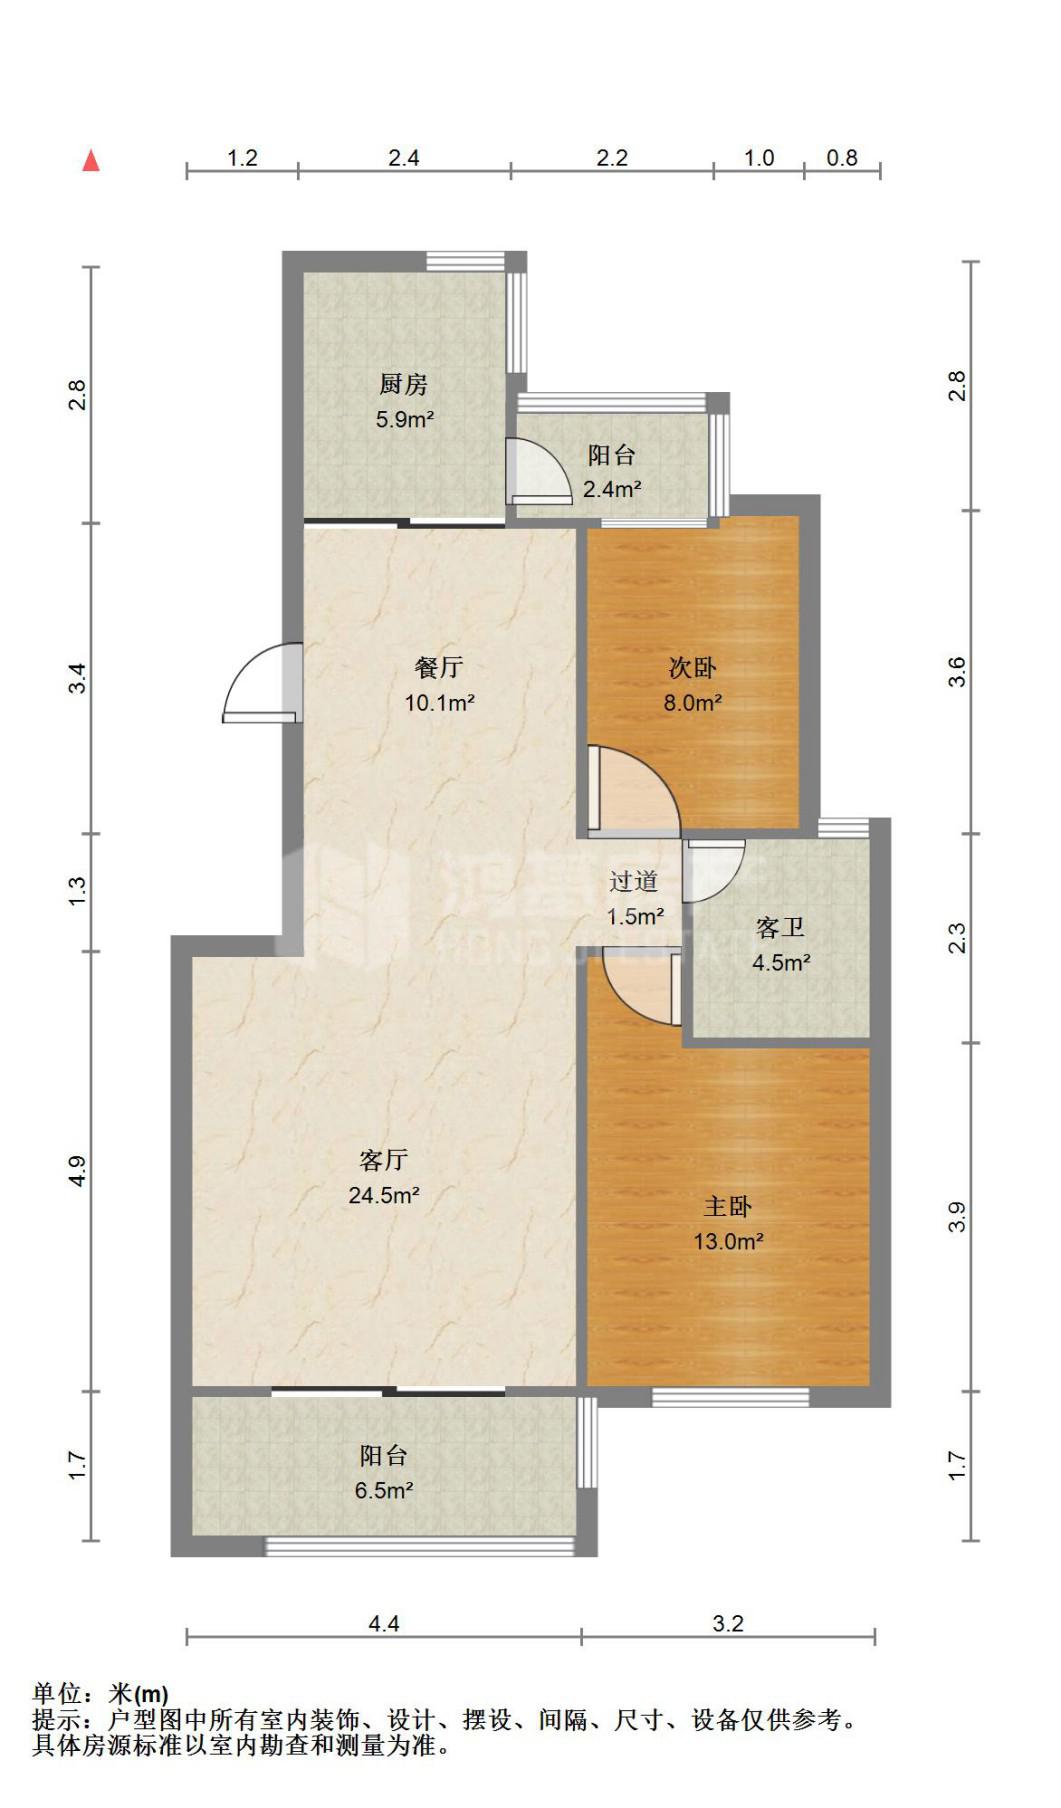 丰和新城,2室2厅1卫2阳台2400元/月,价格实惠,空房出租12